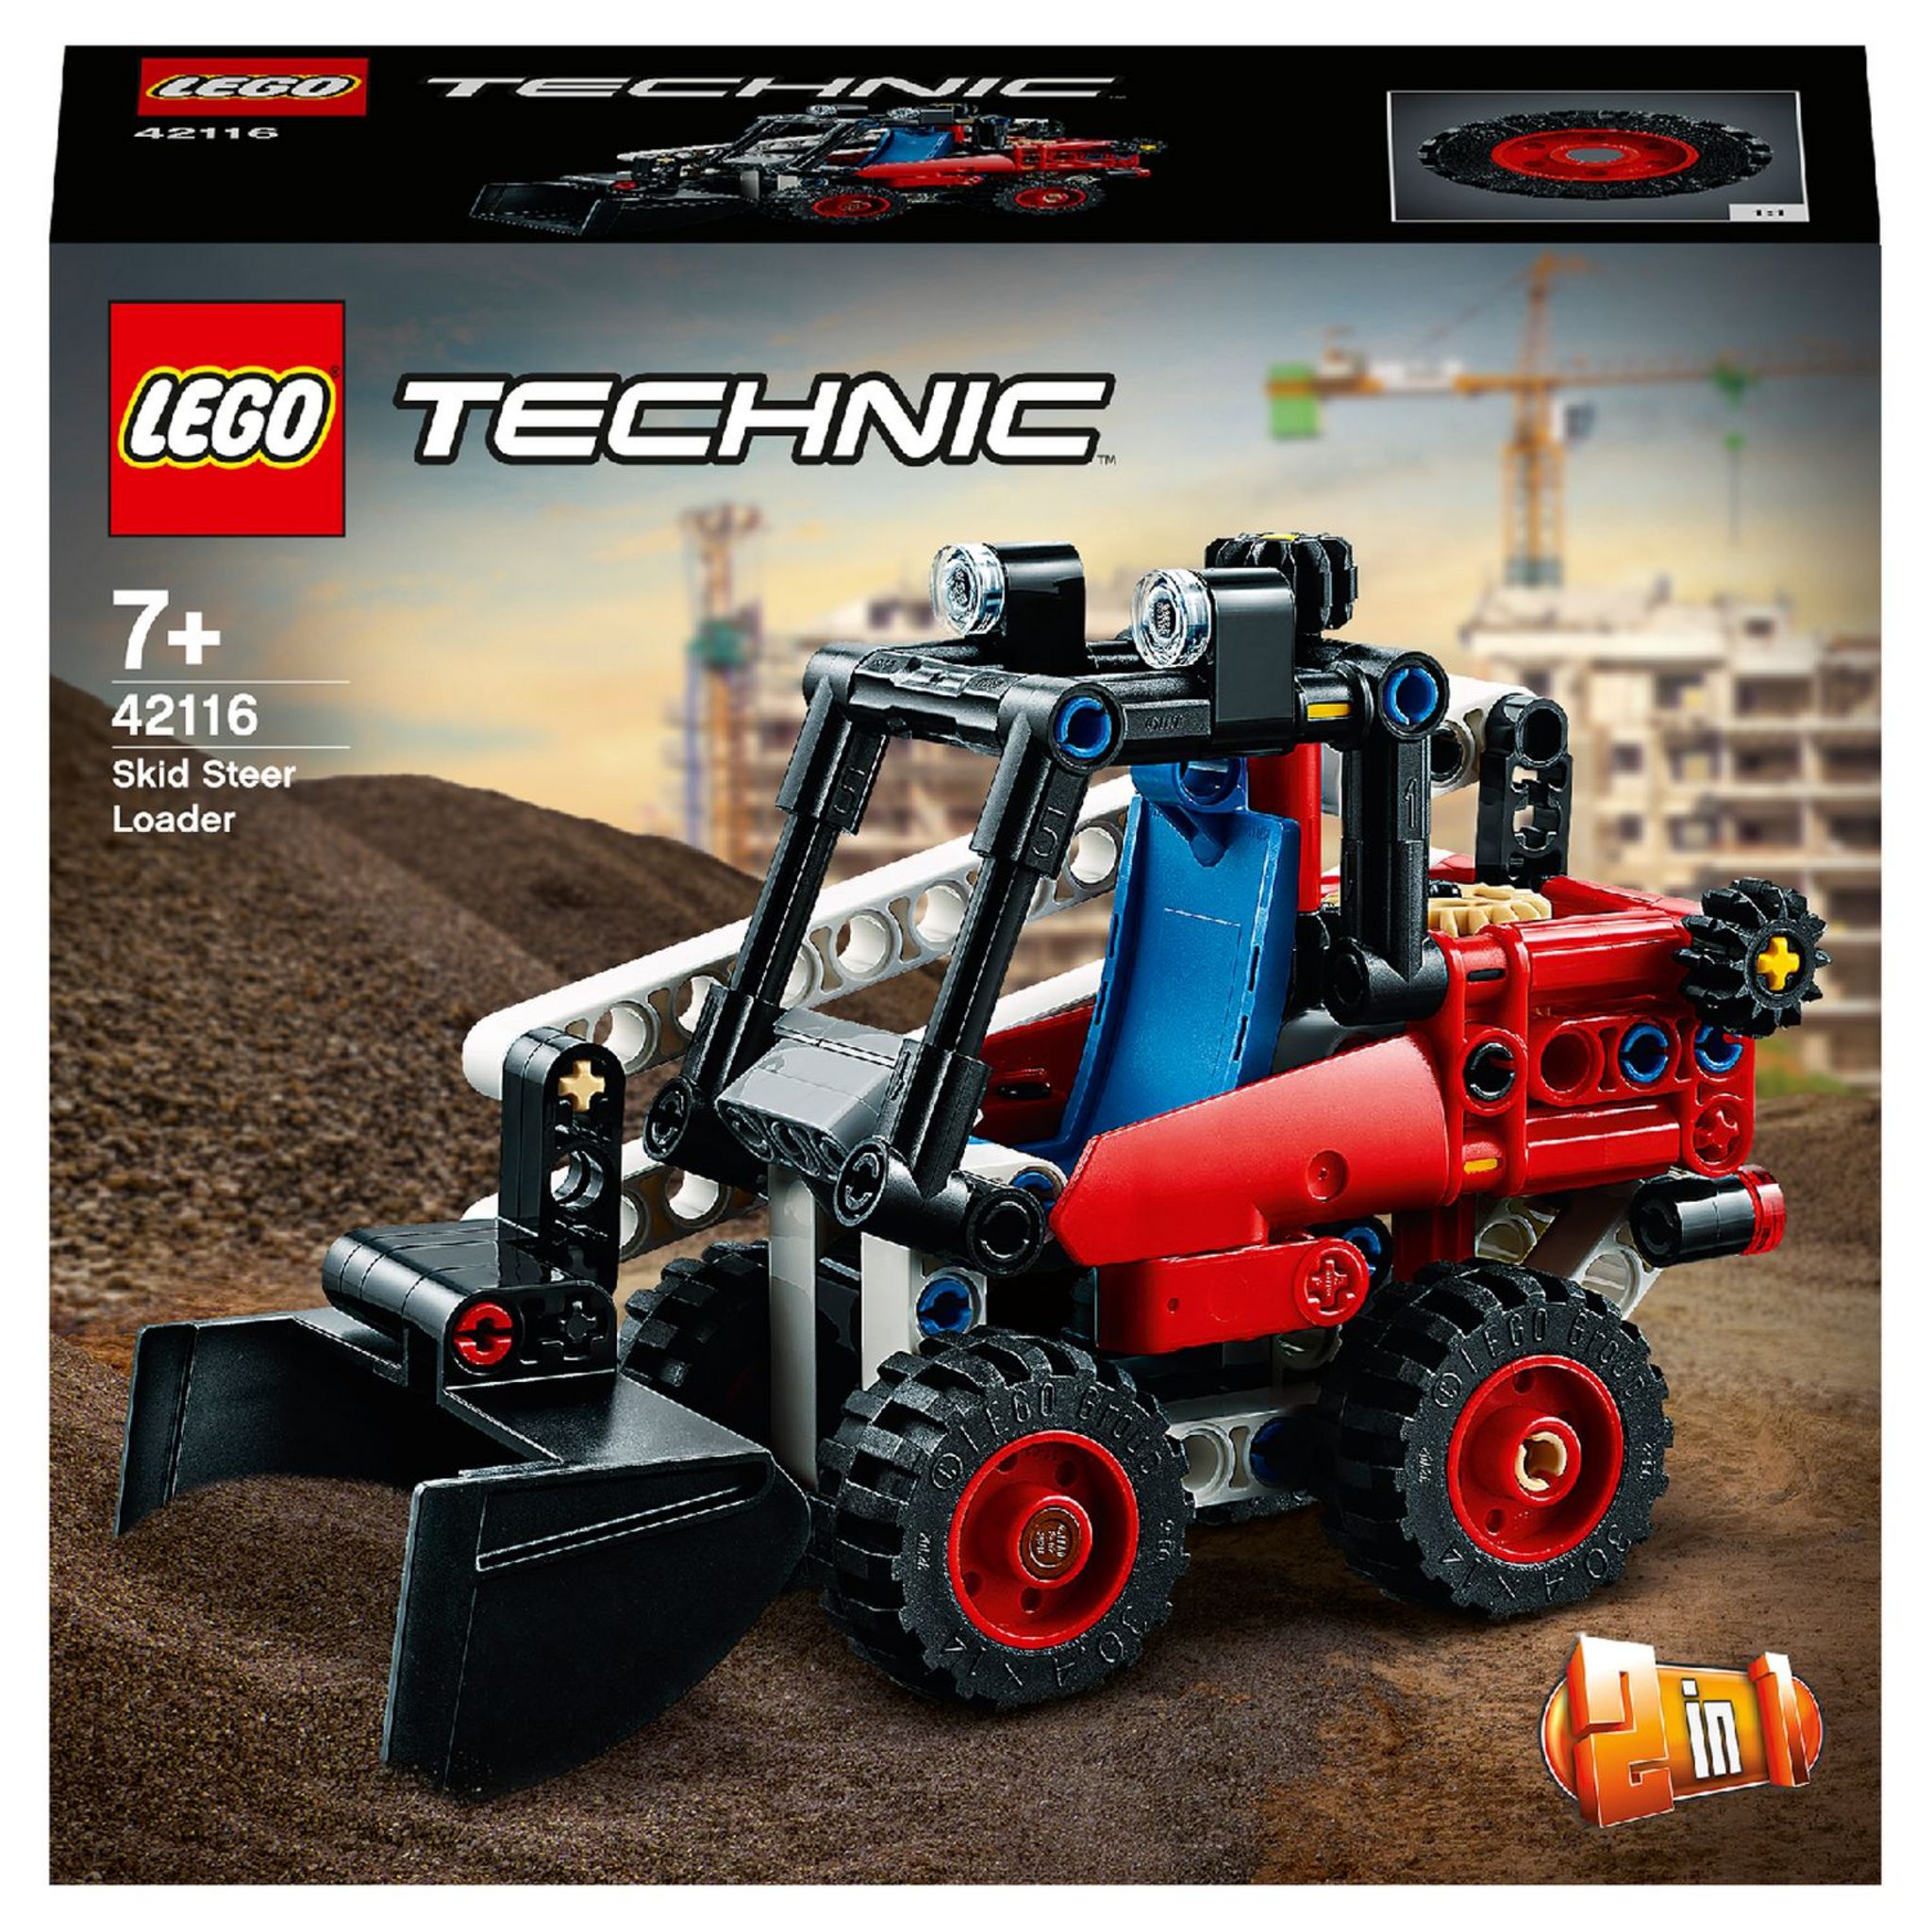 Le chariot élévateur - LEGO® Technic - 42133 - Jeux de construction